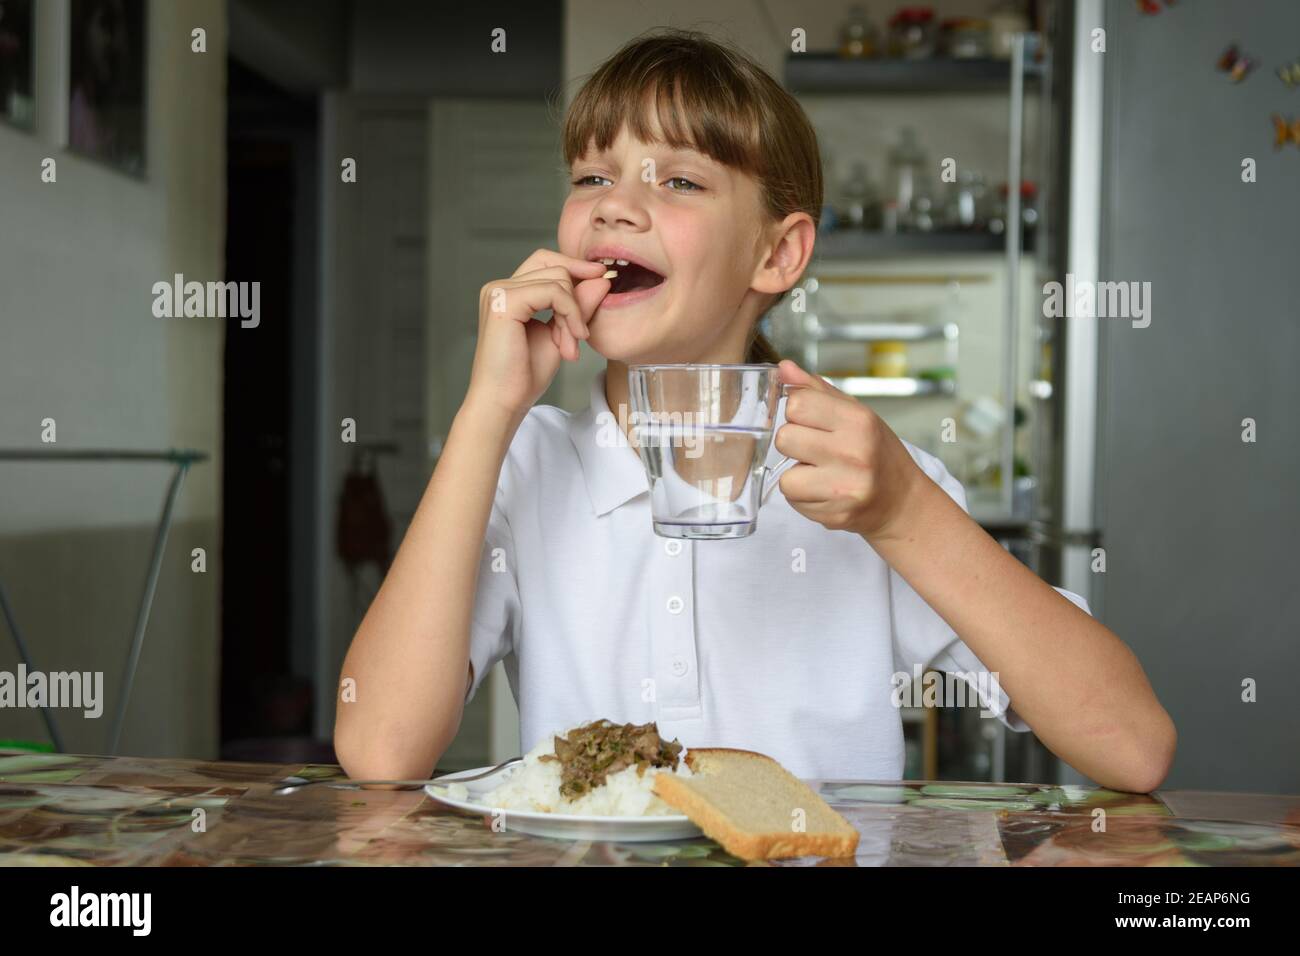 Glückliches kleines Mädchen, das vor dem Essen eine Pille trinkt Stockfoto